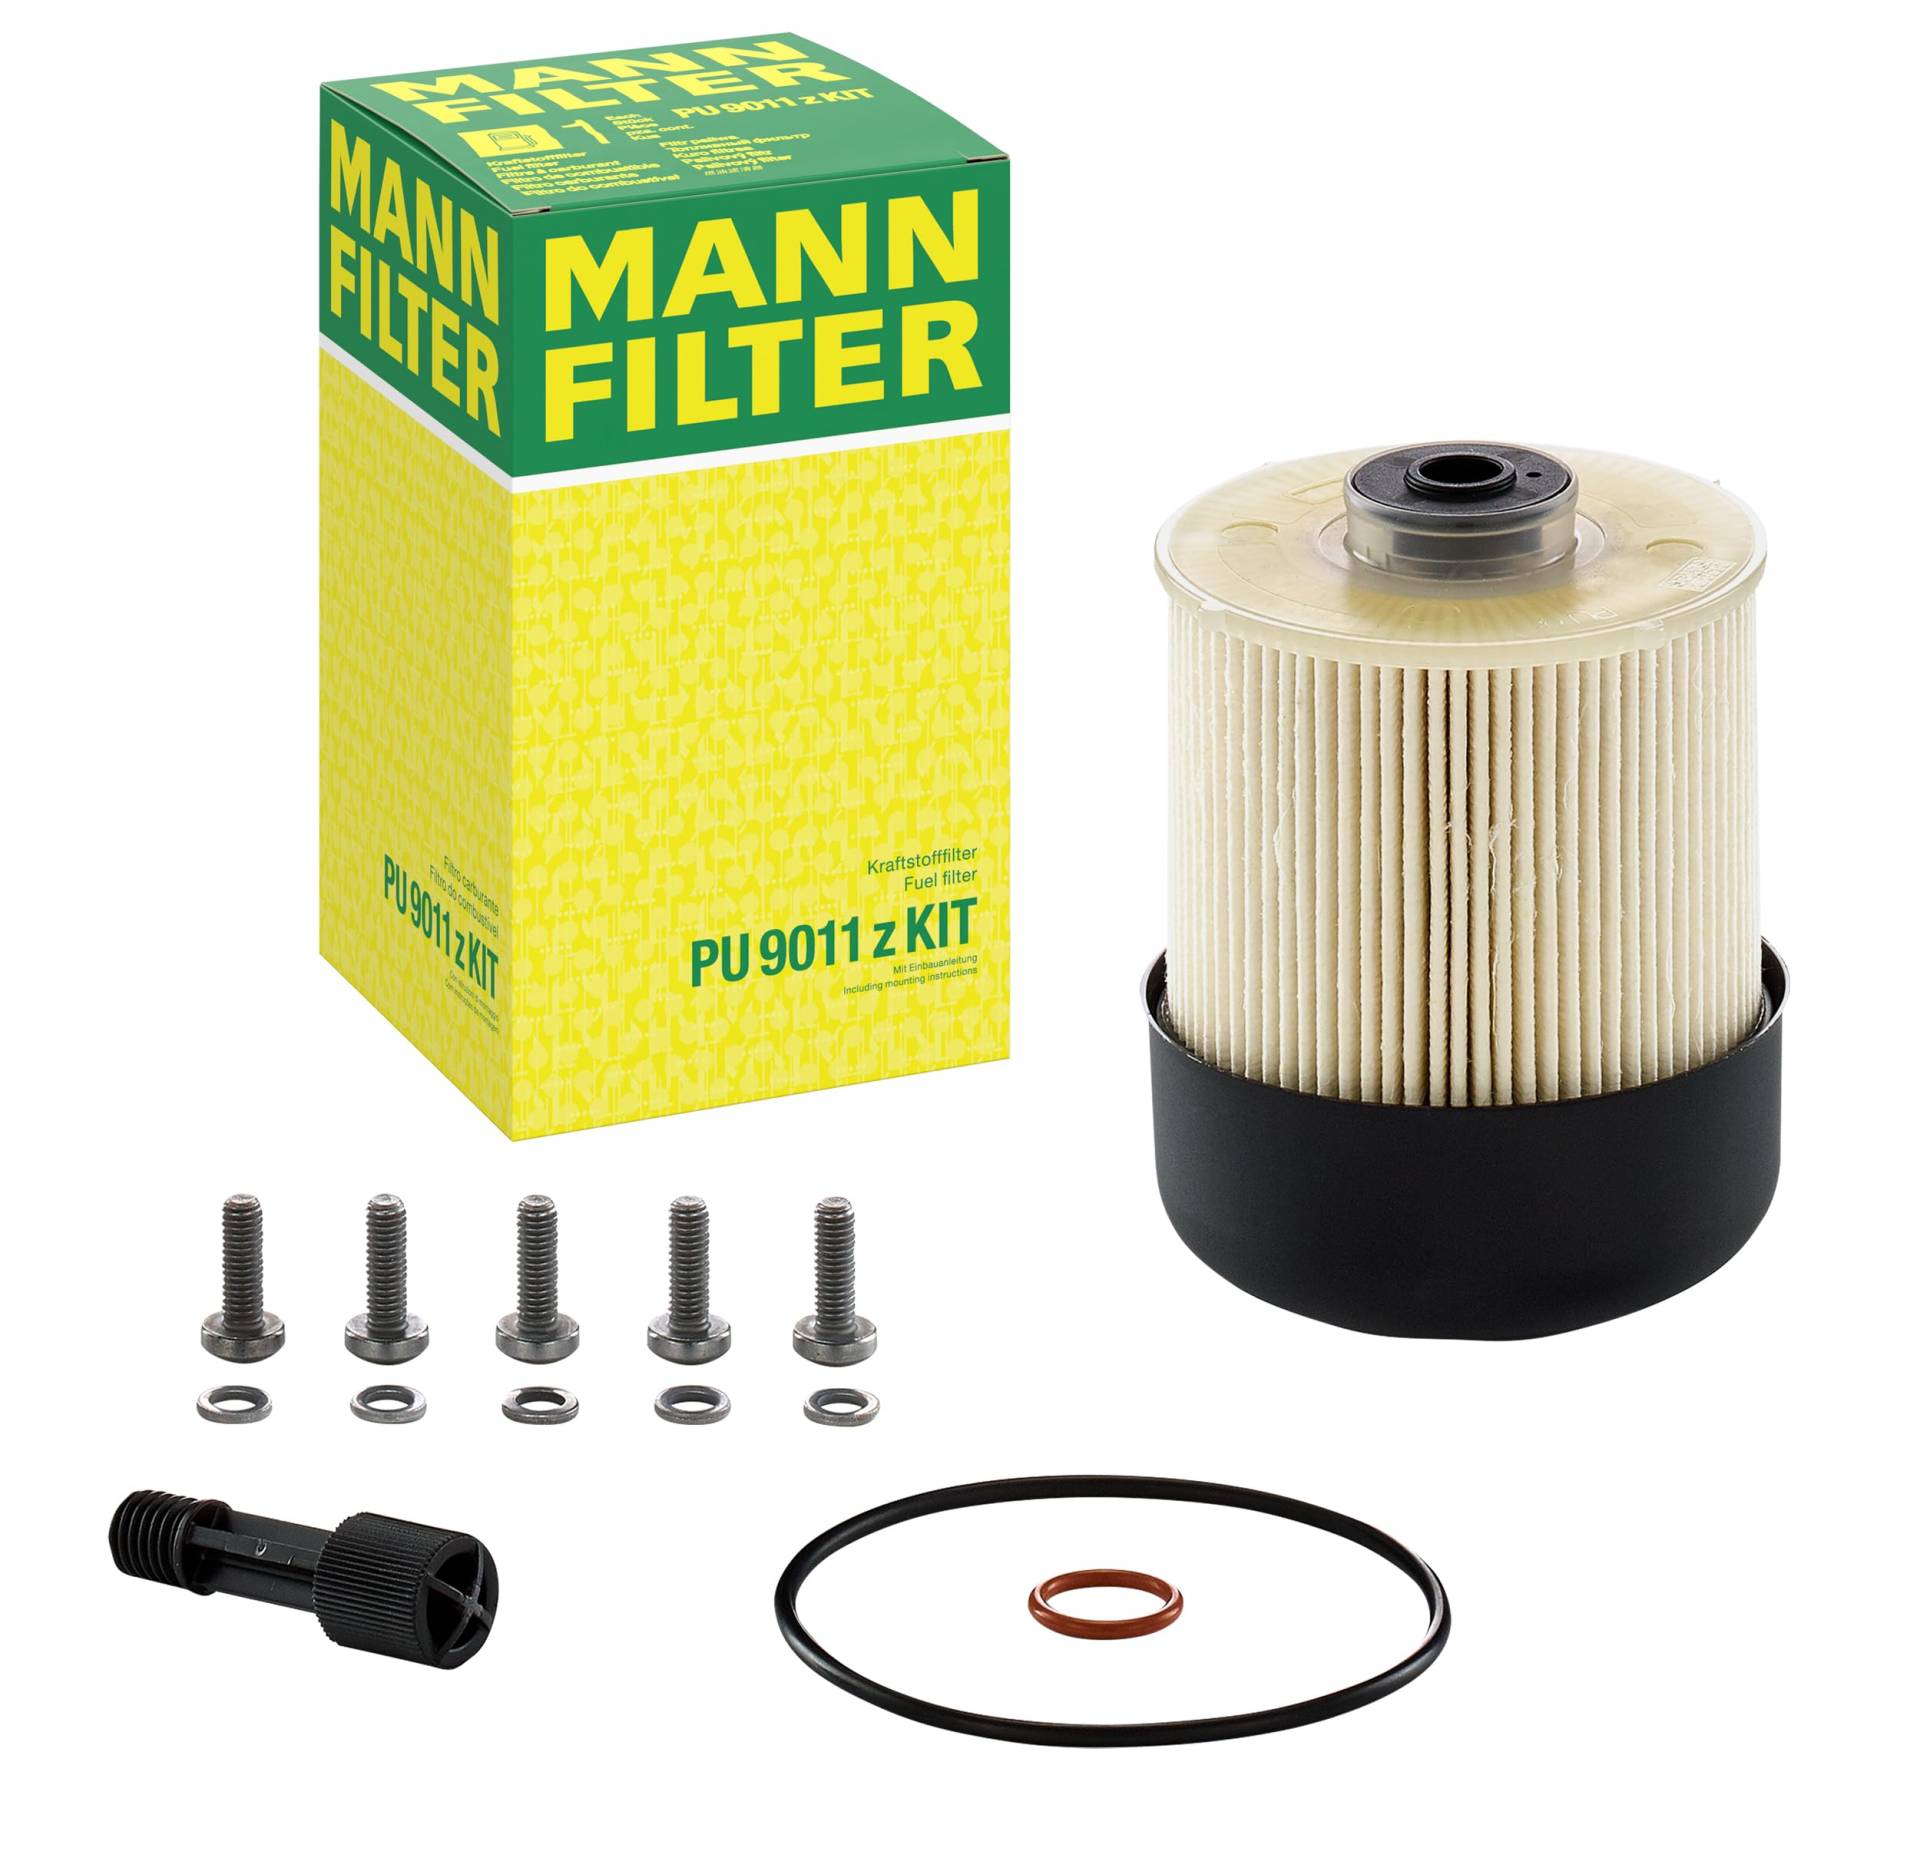 MANN-FILTER PU 9011 z KIT Kraftstofffilter – Für PKW von MANN-FILTER